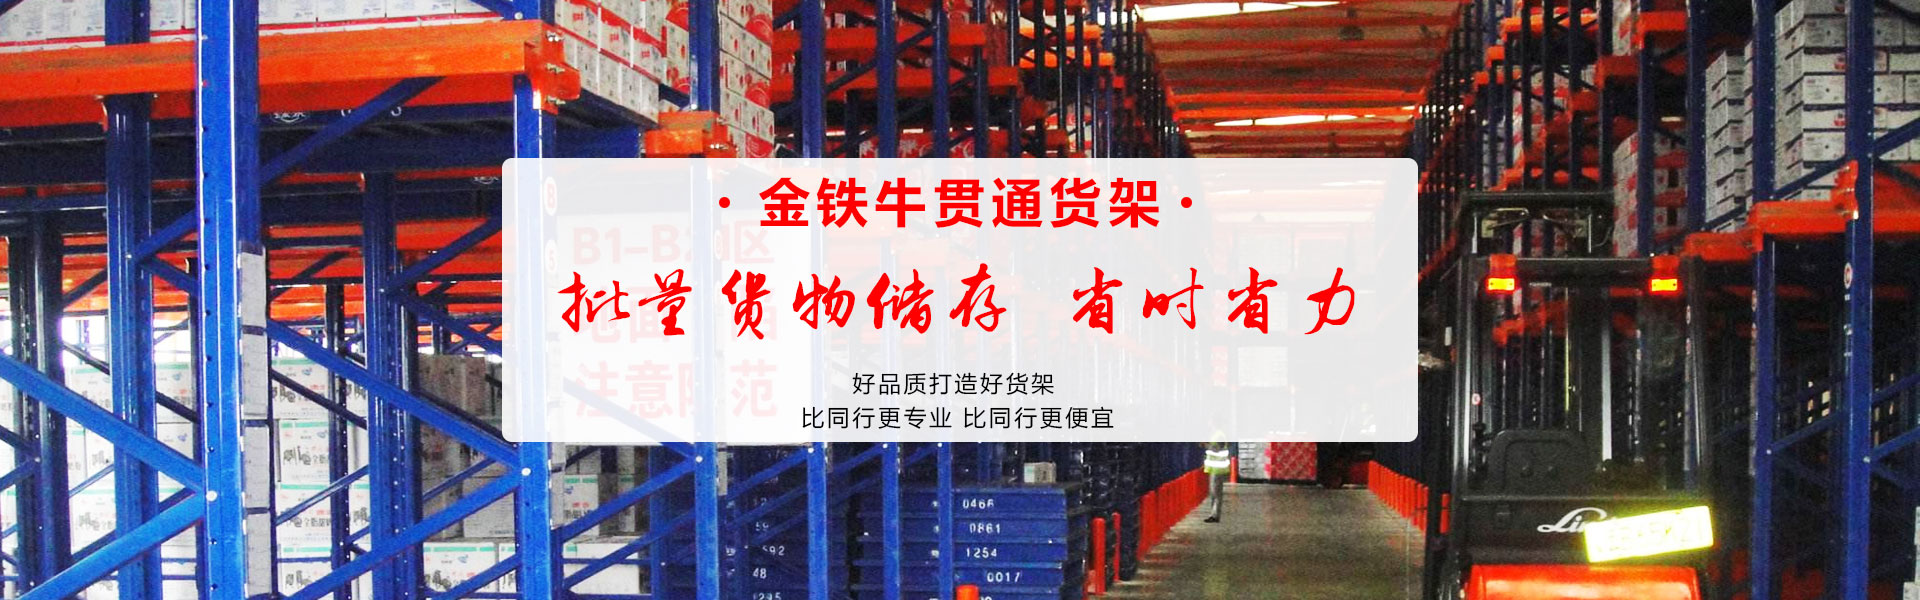 广州金铁牛货架贯通货架厂家直销，价格优惠。